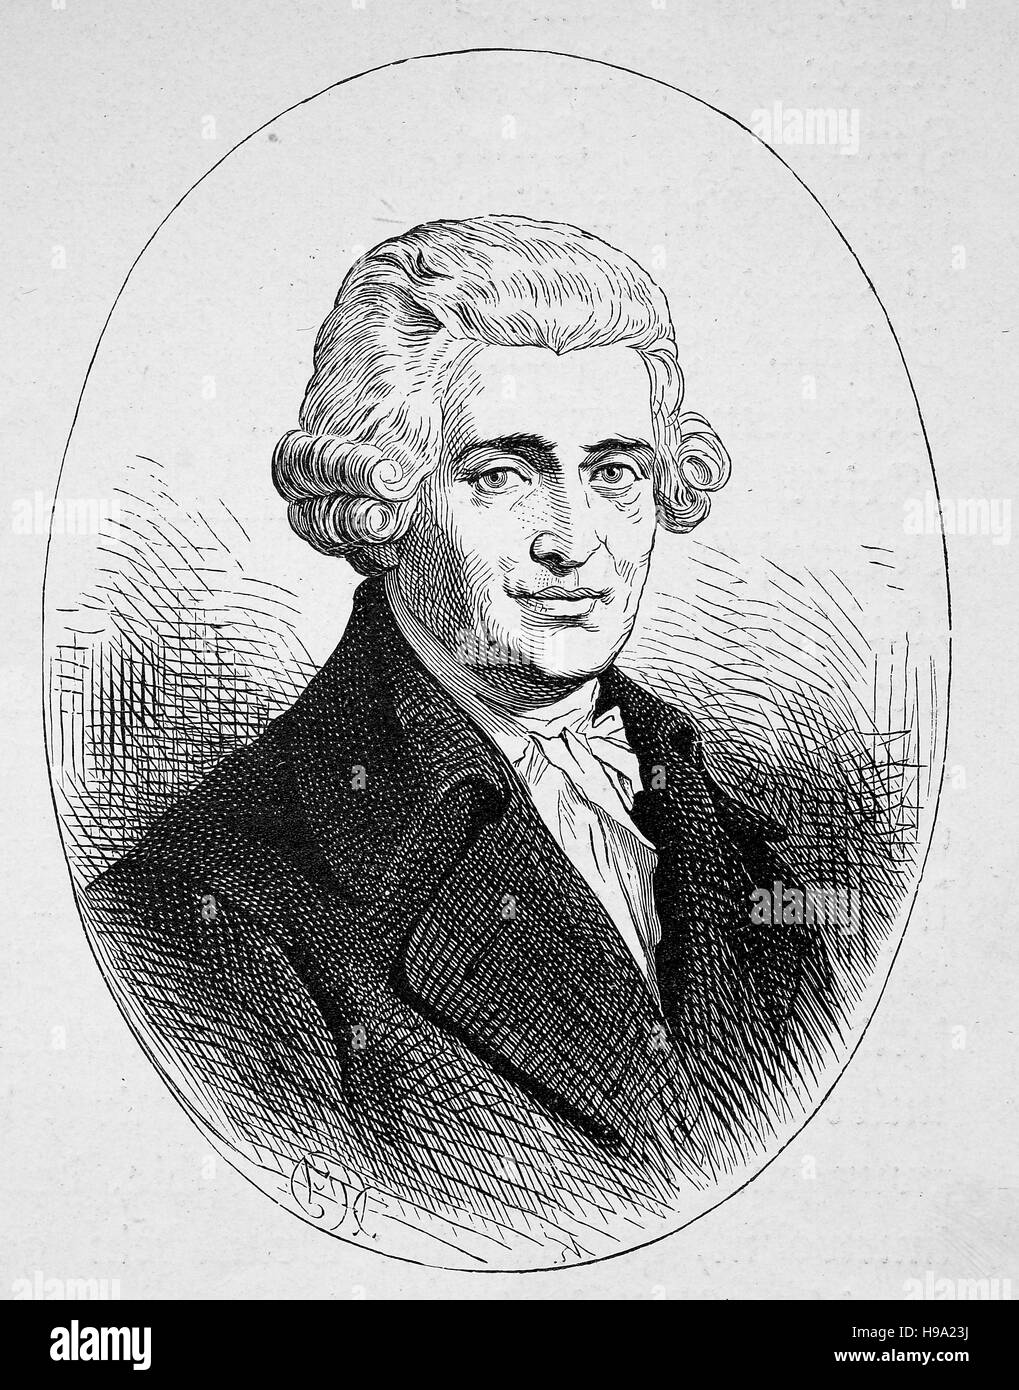 Franz Joseph Haydn, 31 marzo 1732 - 31 maggio 1809, fu un prolifico compositore austriaco del periodo classico, illustrazione storico Foto Stock